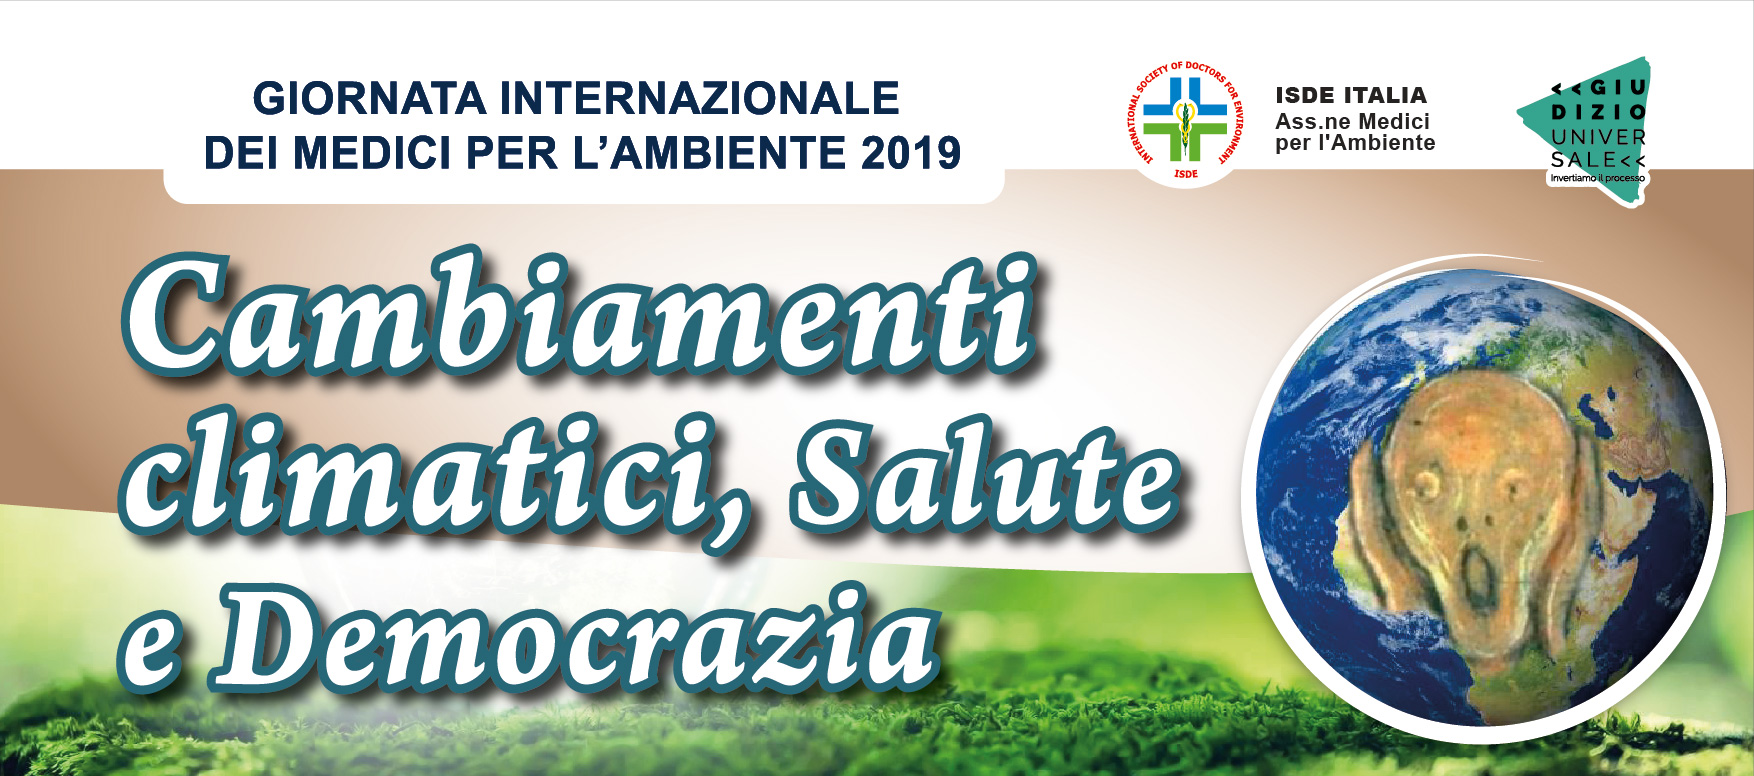 25 novembre 2019: Giornata internazionale dei Medici per l’Ambiente